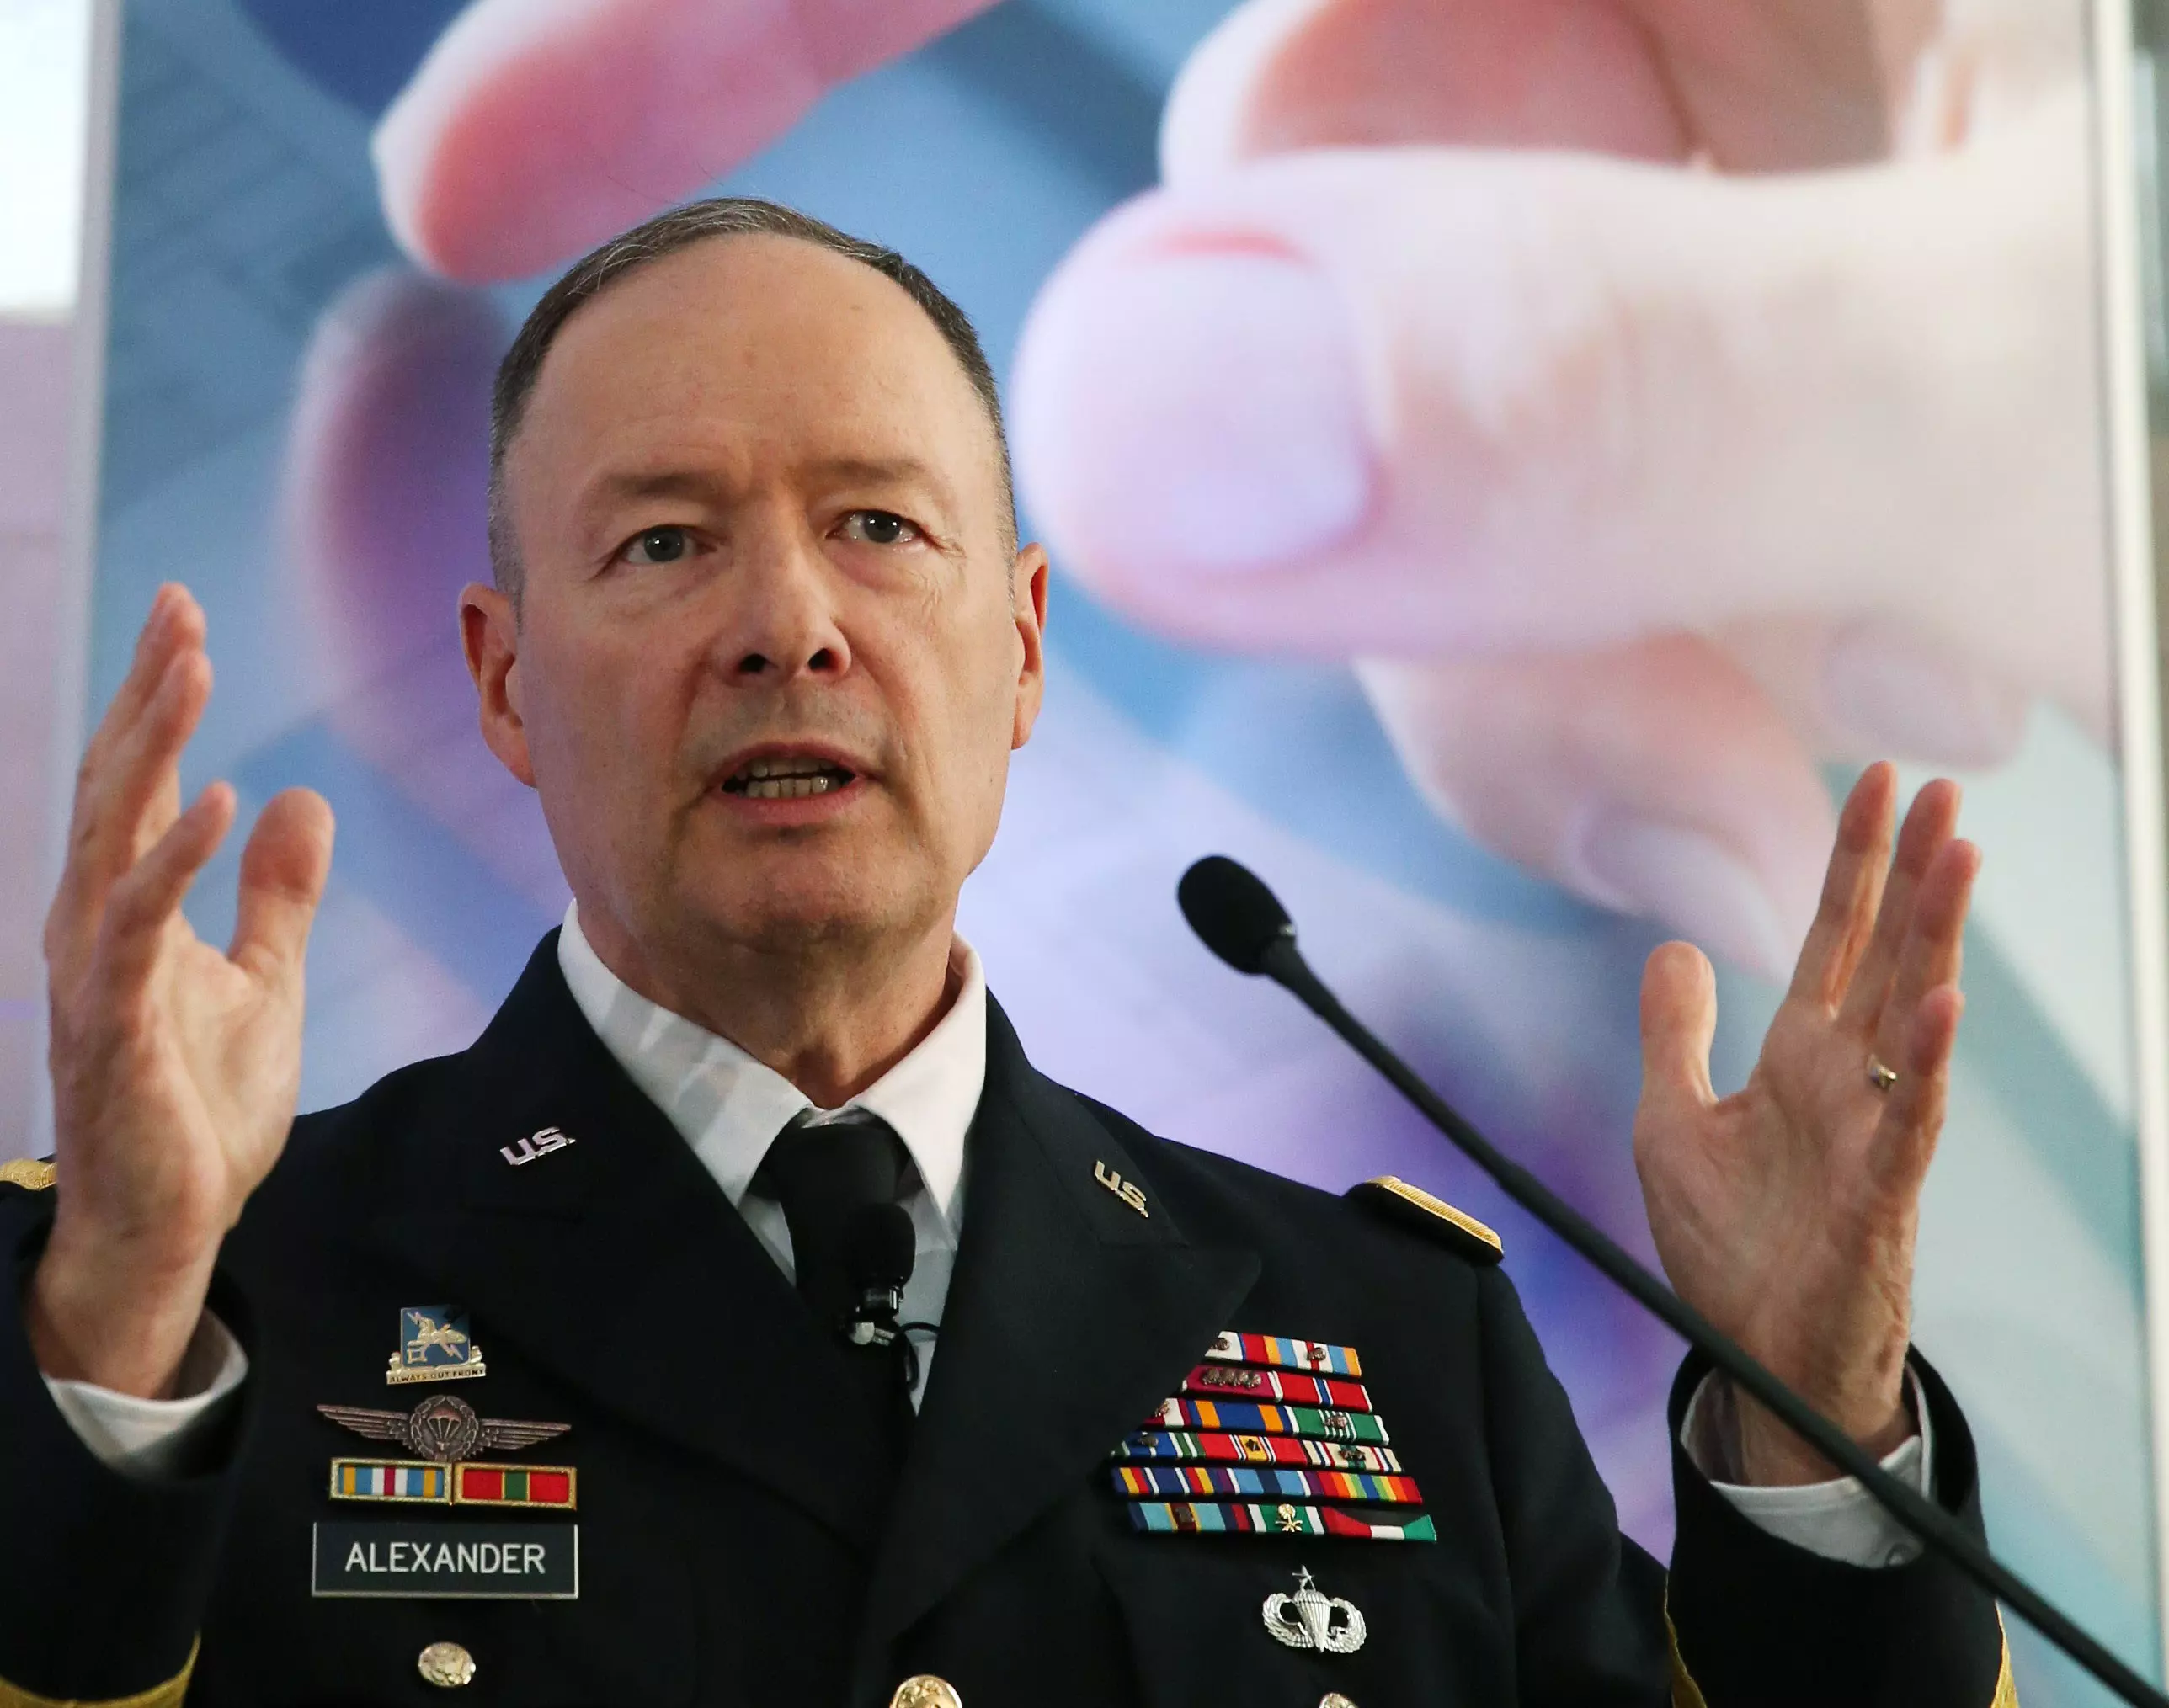 "משקיעים מיליארדים בטכנולוגיות זיהוי פנים". מפקד ה-NSA, קית' אלכסנדר